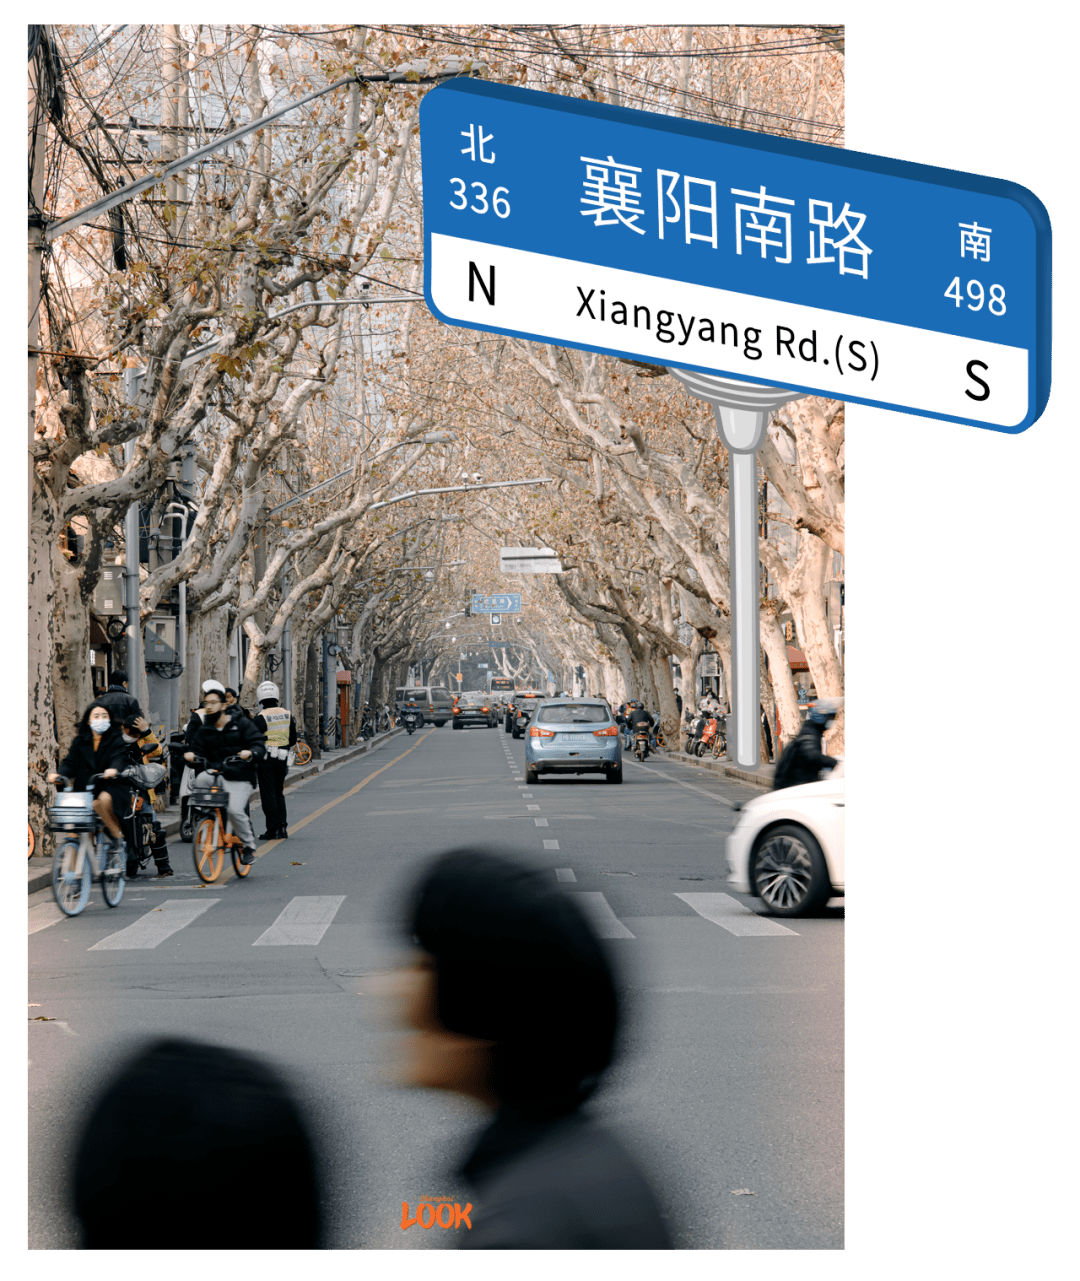 襄阳街景地图图片